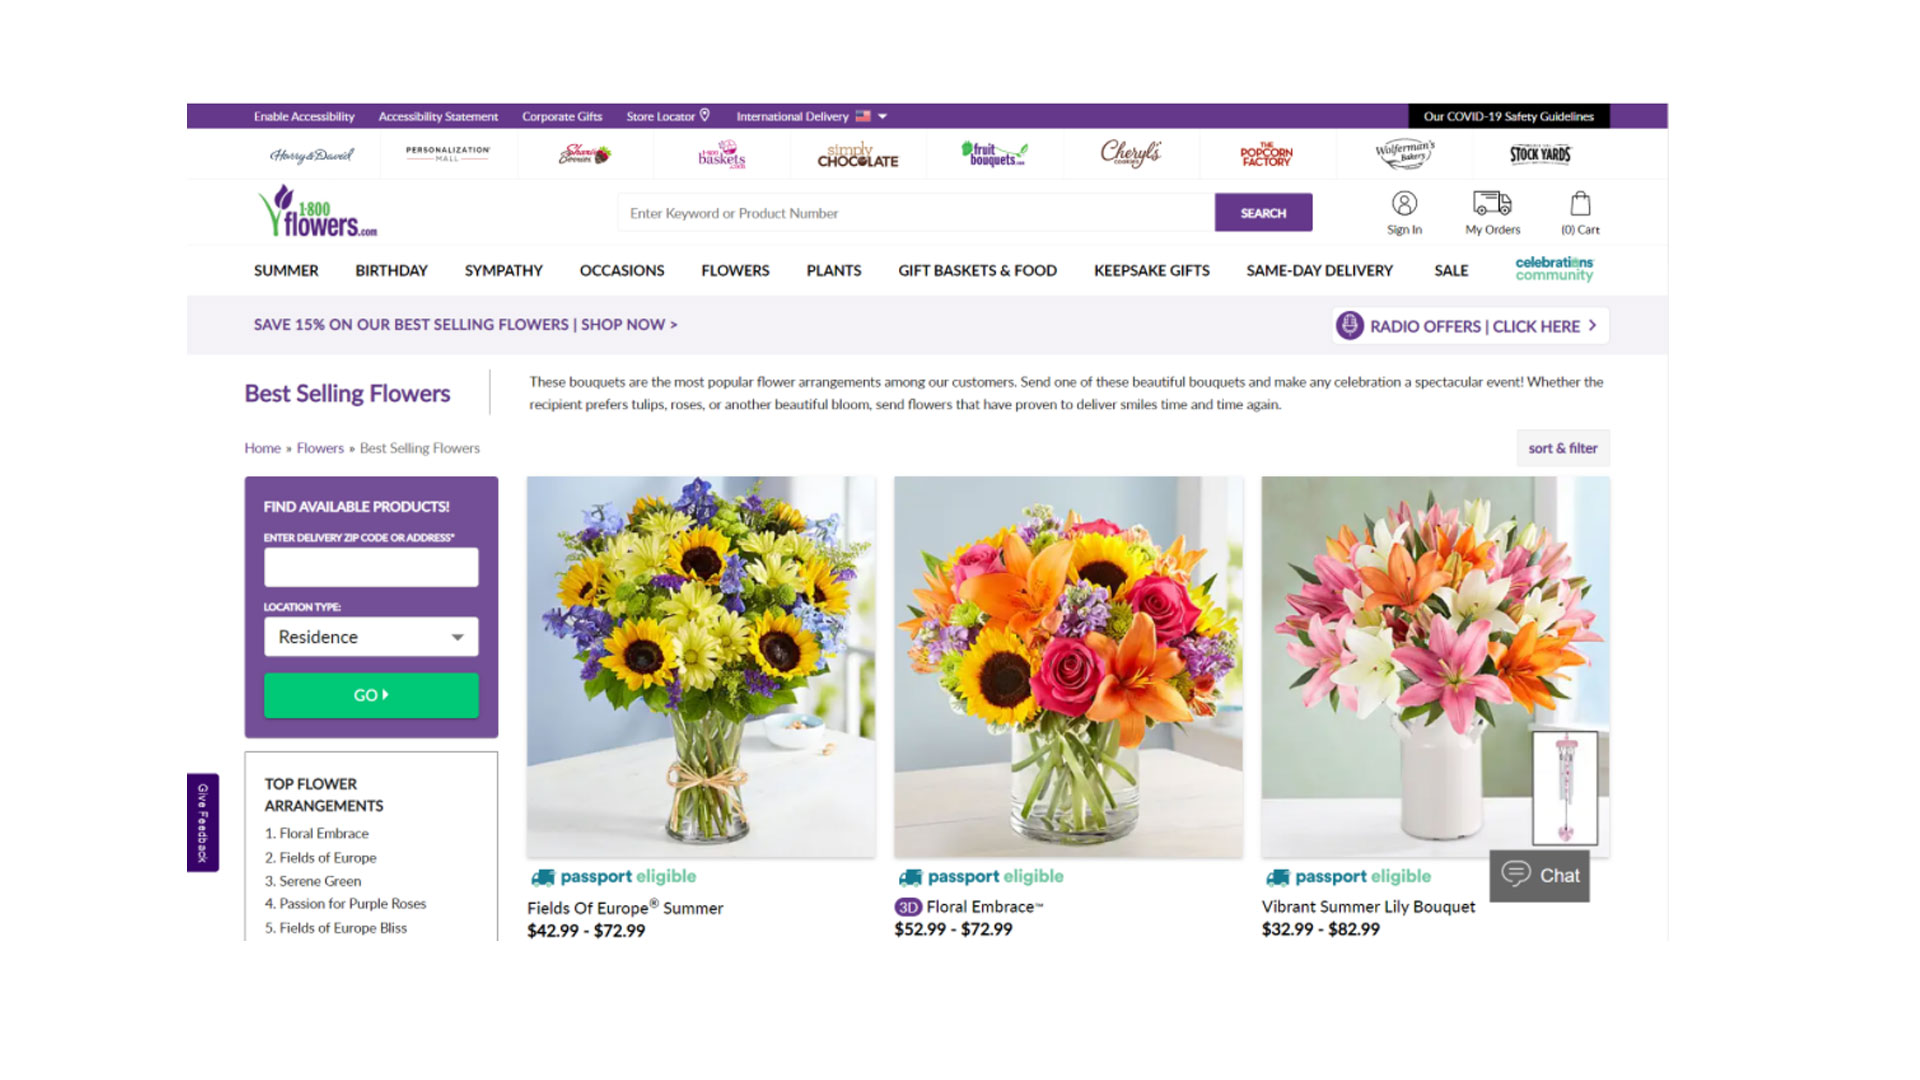 1-800-Flowers avis : L'image montre les bouquets les plus vendus du site Web.